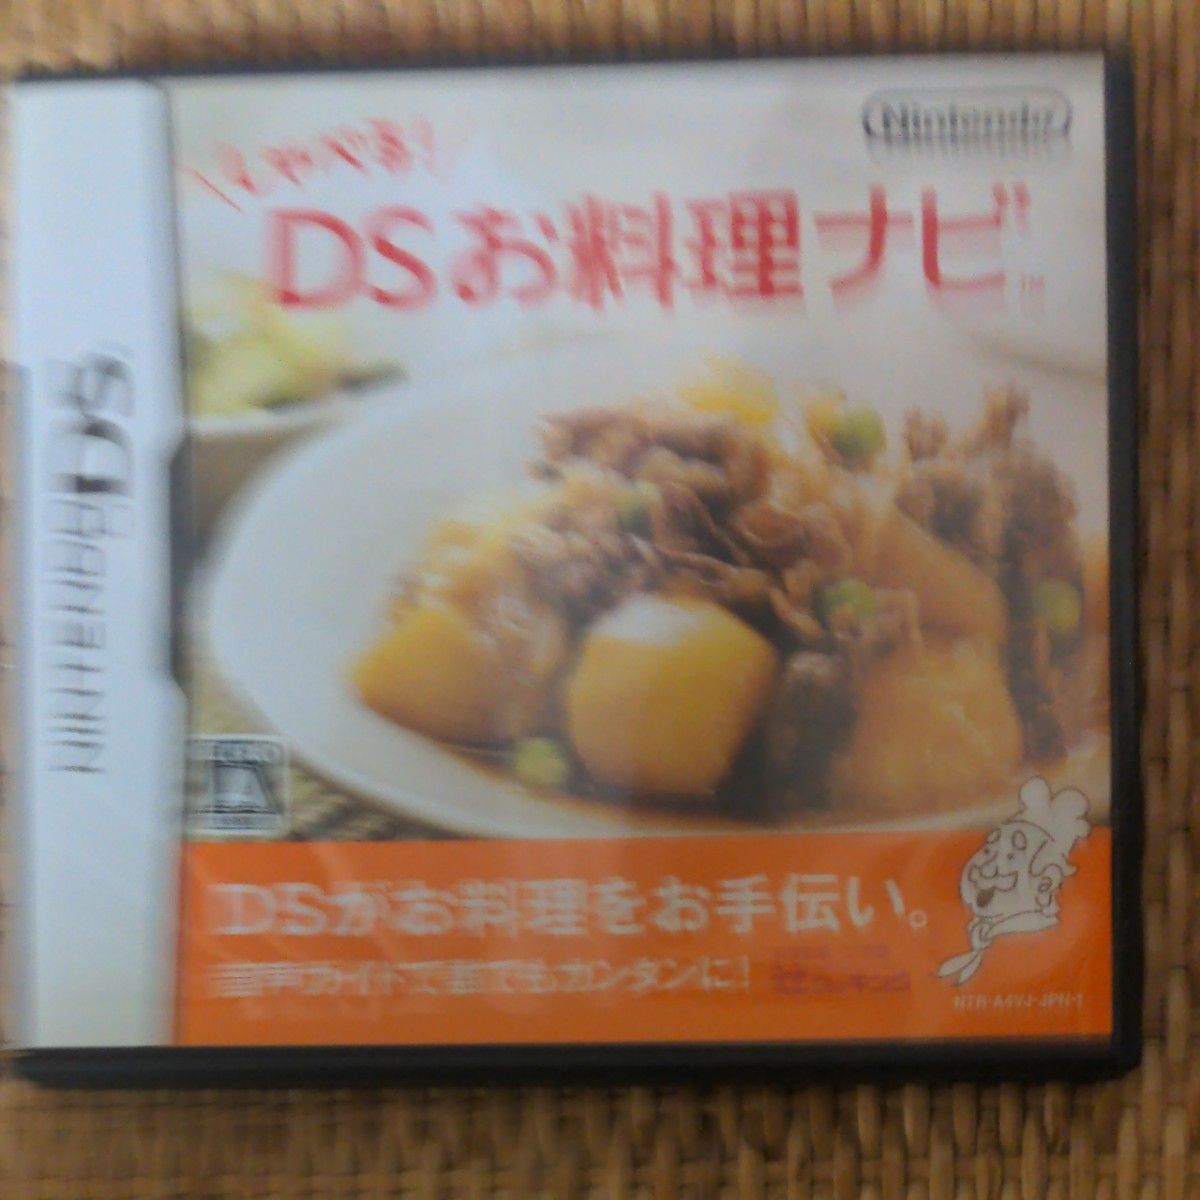 【DS】 しゃべる！DSお料理ナビ